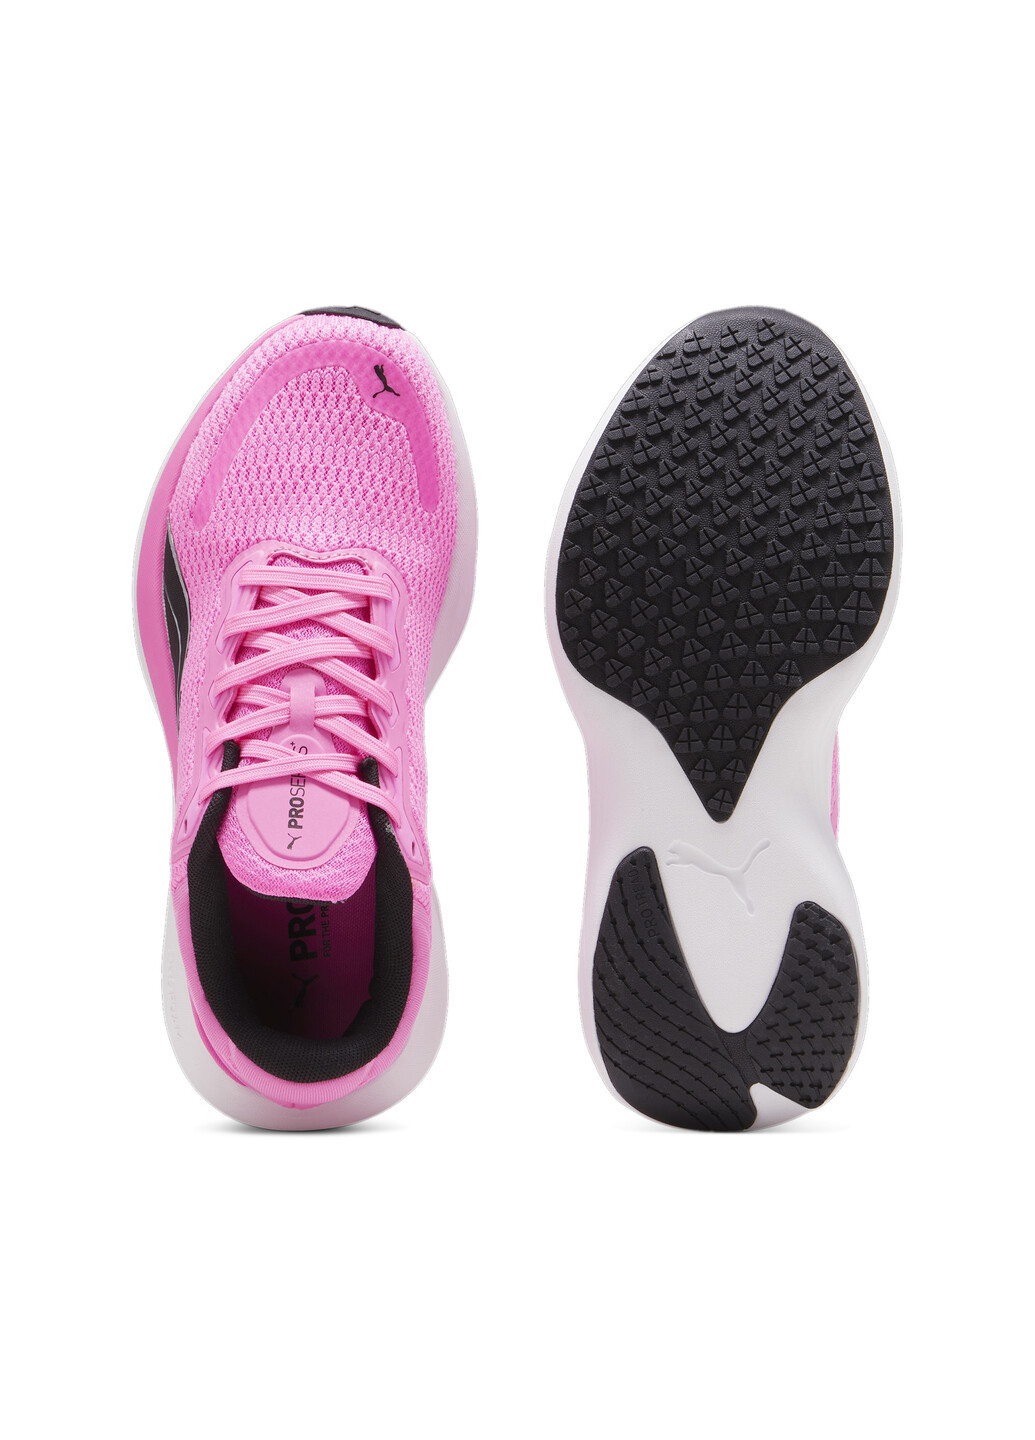 Розовые всесезонные кроссовки scend pro running shoes Puma